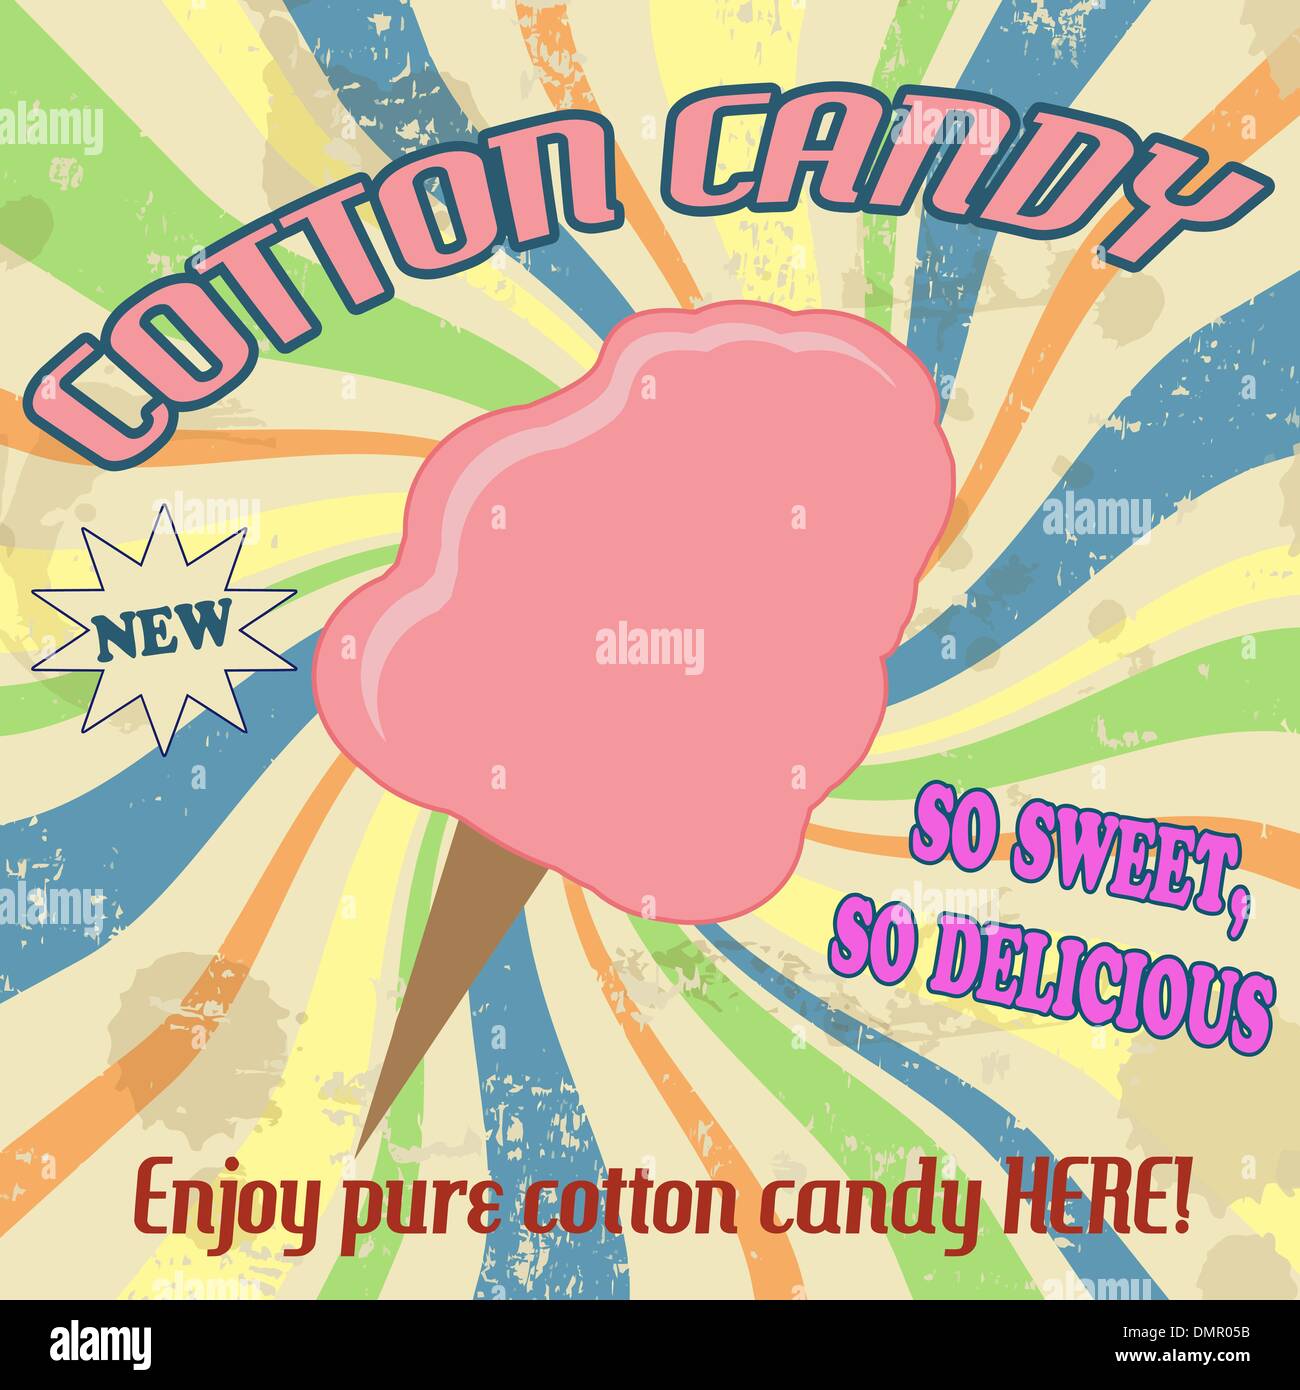 Cotton candy poster immagini e fotografie stock ad alta risoluzione - Alamy